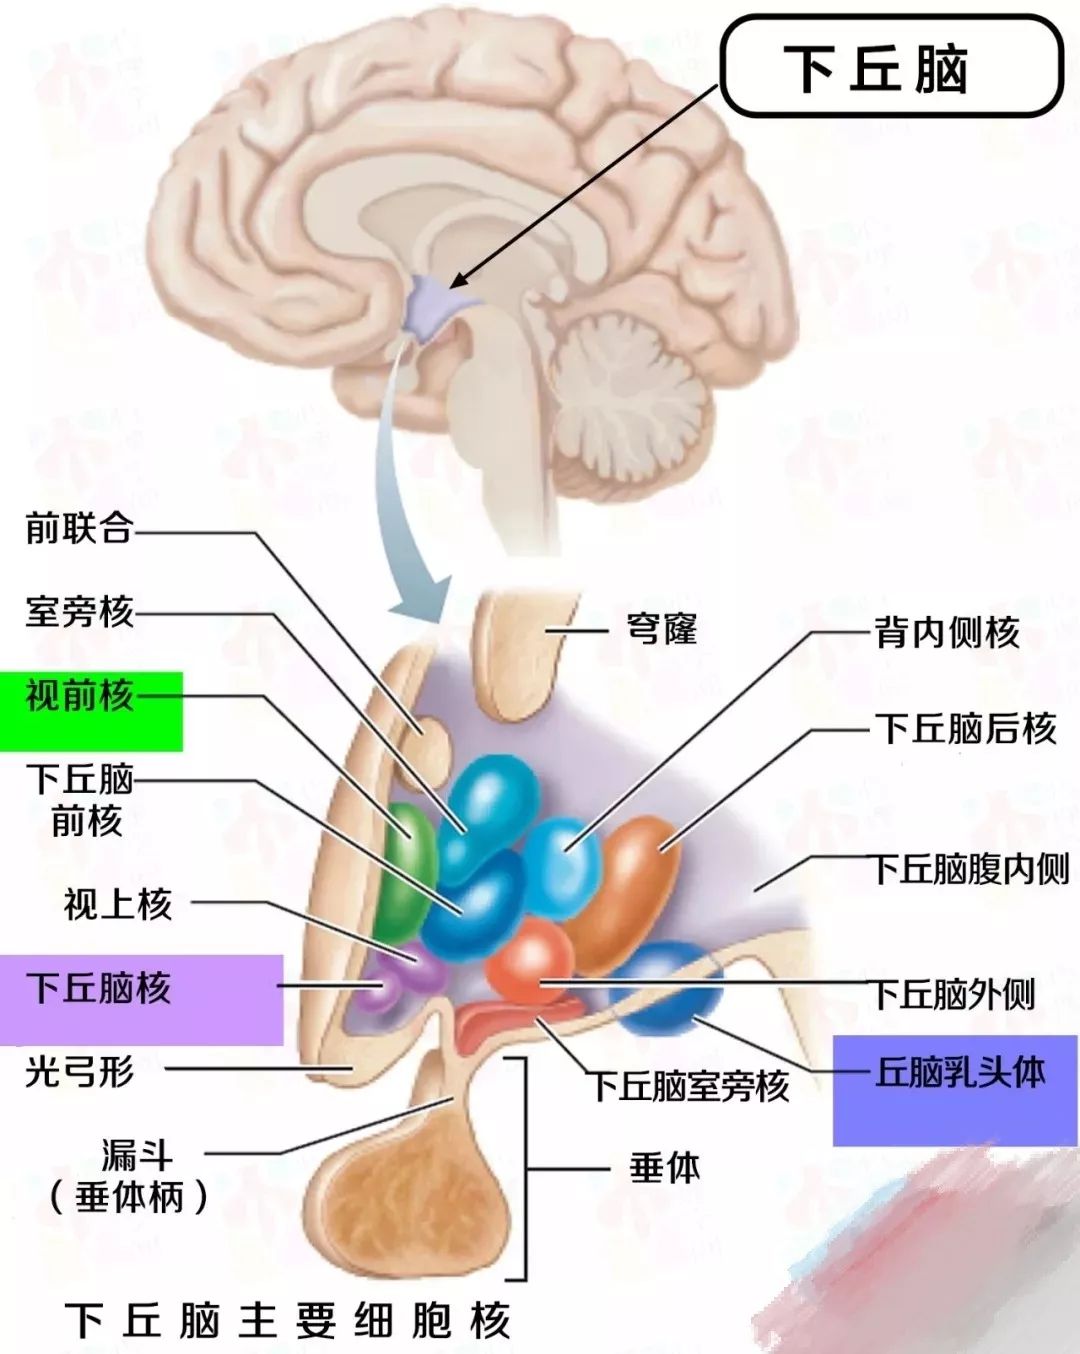 激活的核心区域是下丘脑内侧腹内侧和外侧(ventromedial hypothalamus